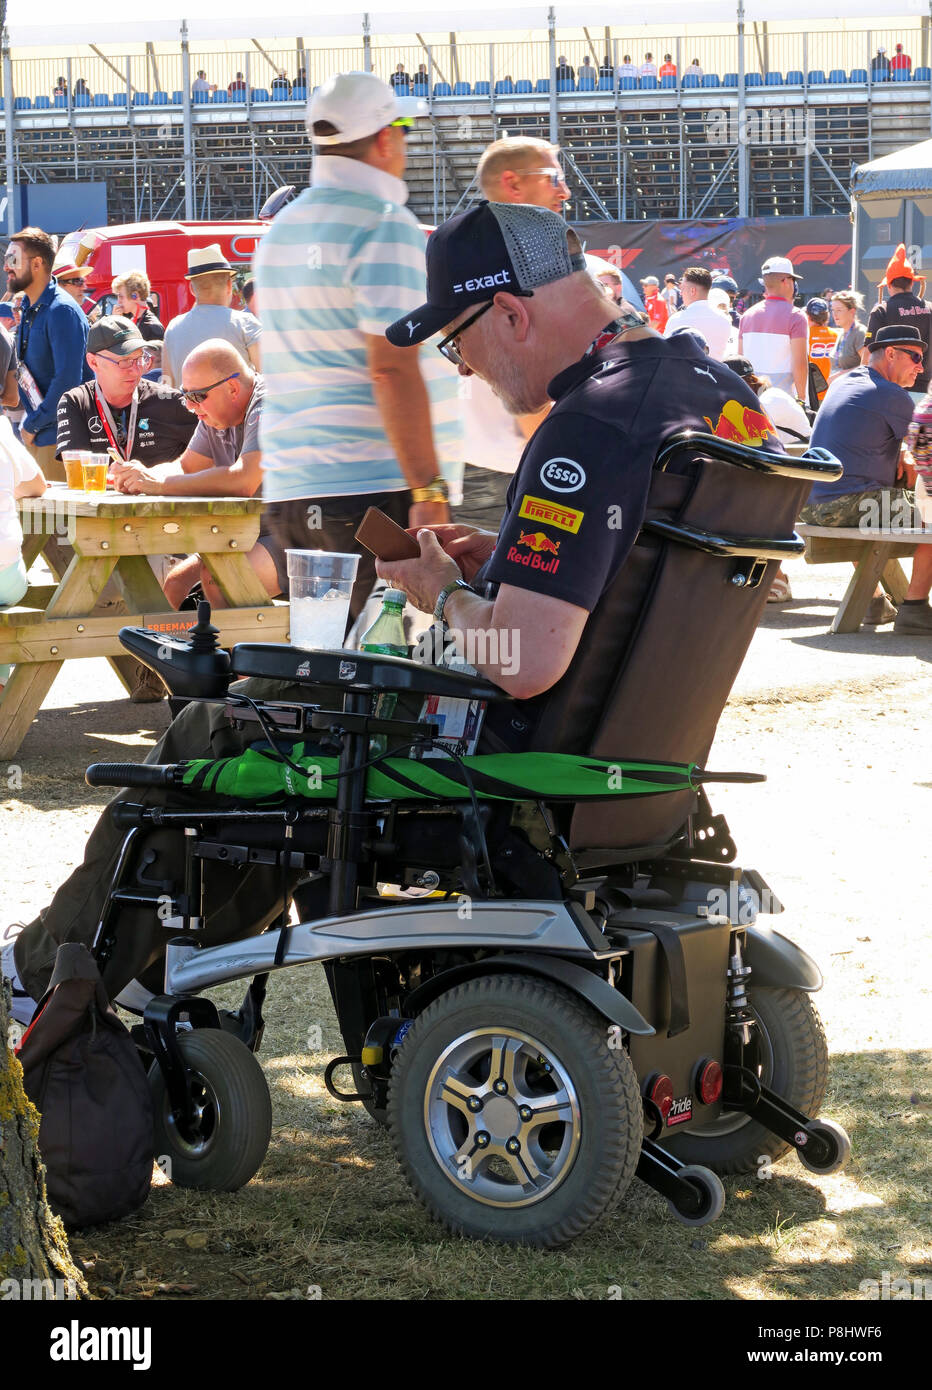 Disabled Red Bull fan spectatrice, au Grand Prix de Grande-Bretagne, circuit de Silverstone, Towcester, Northamptonshire, Angleterre, ROYAUME-UNI Banque D'Images